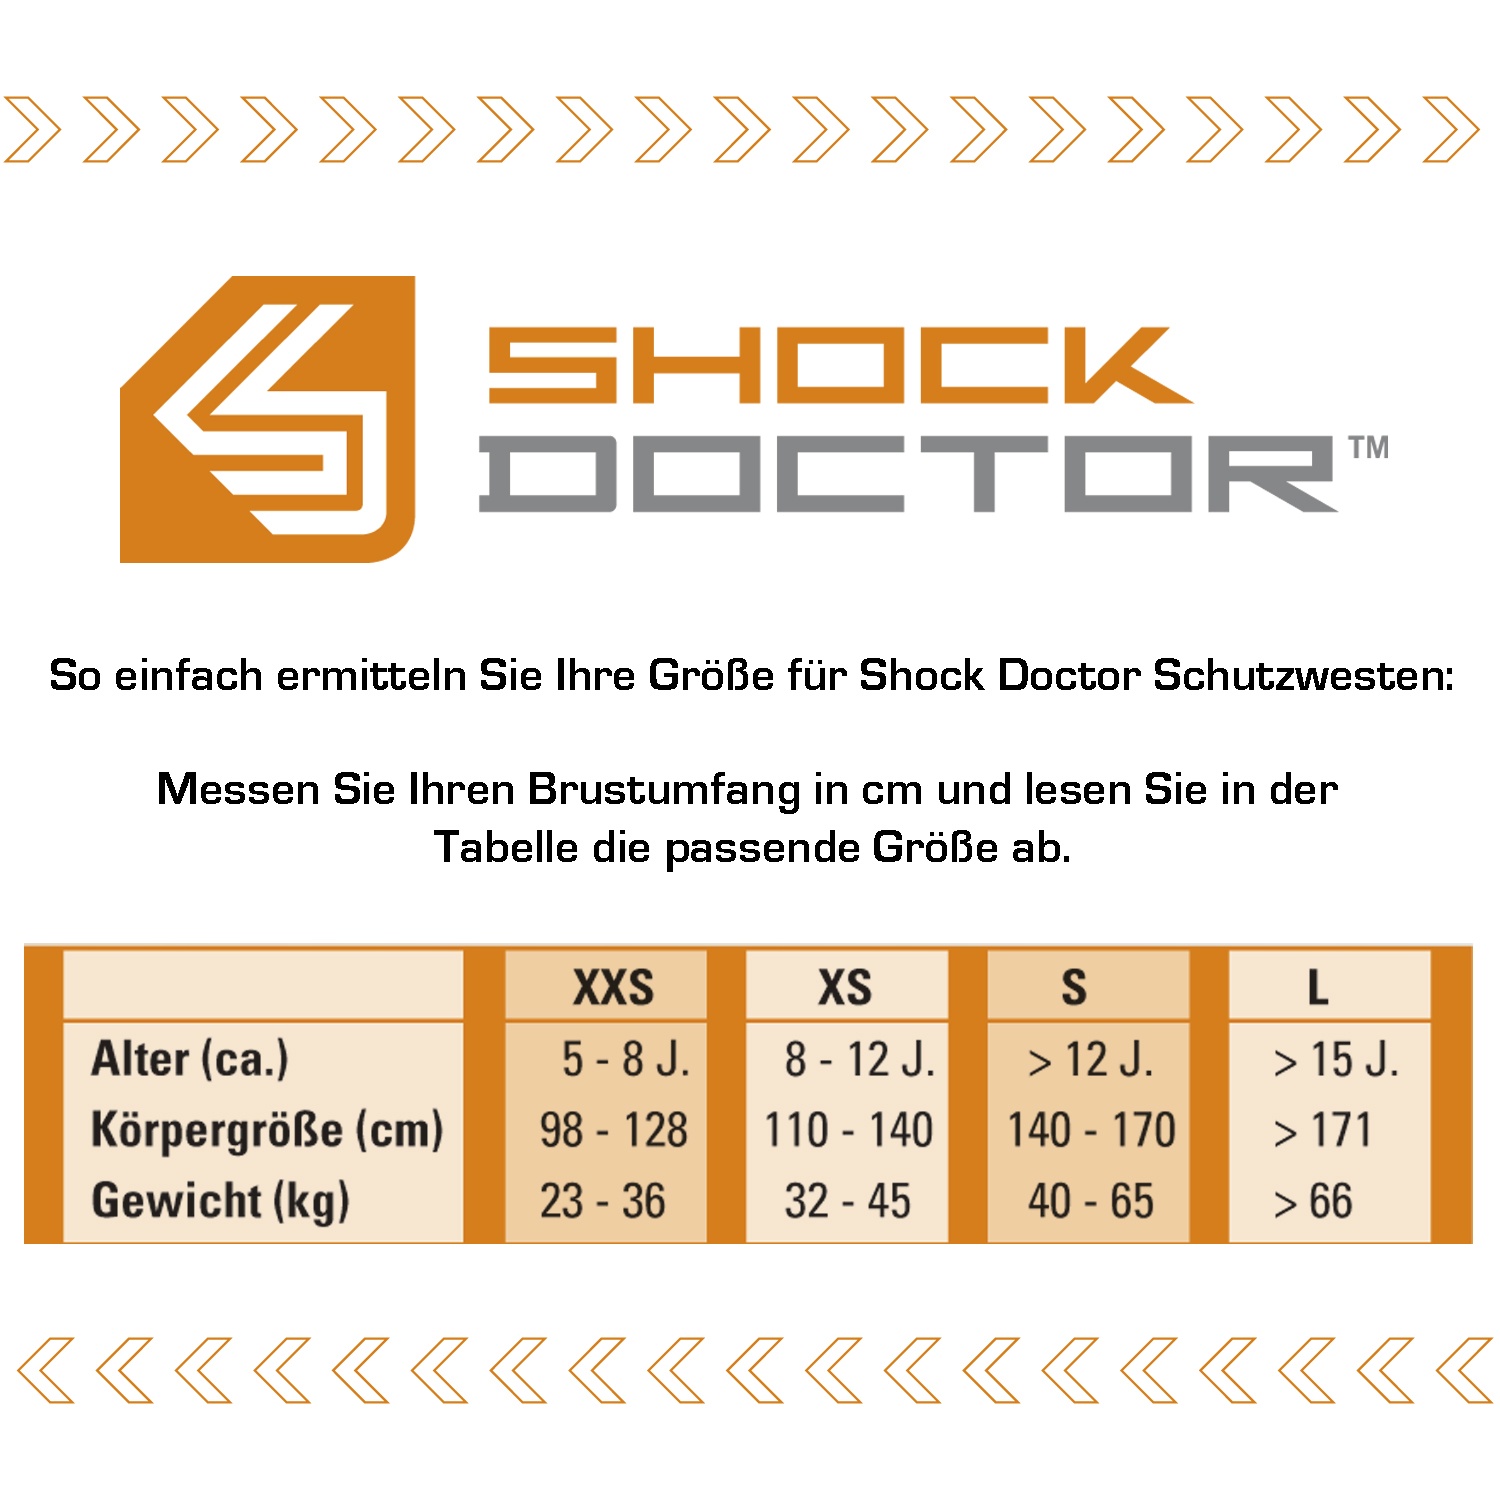 Shock Doctor Schutzweste